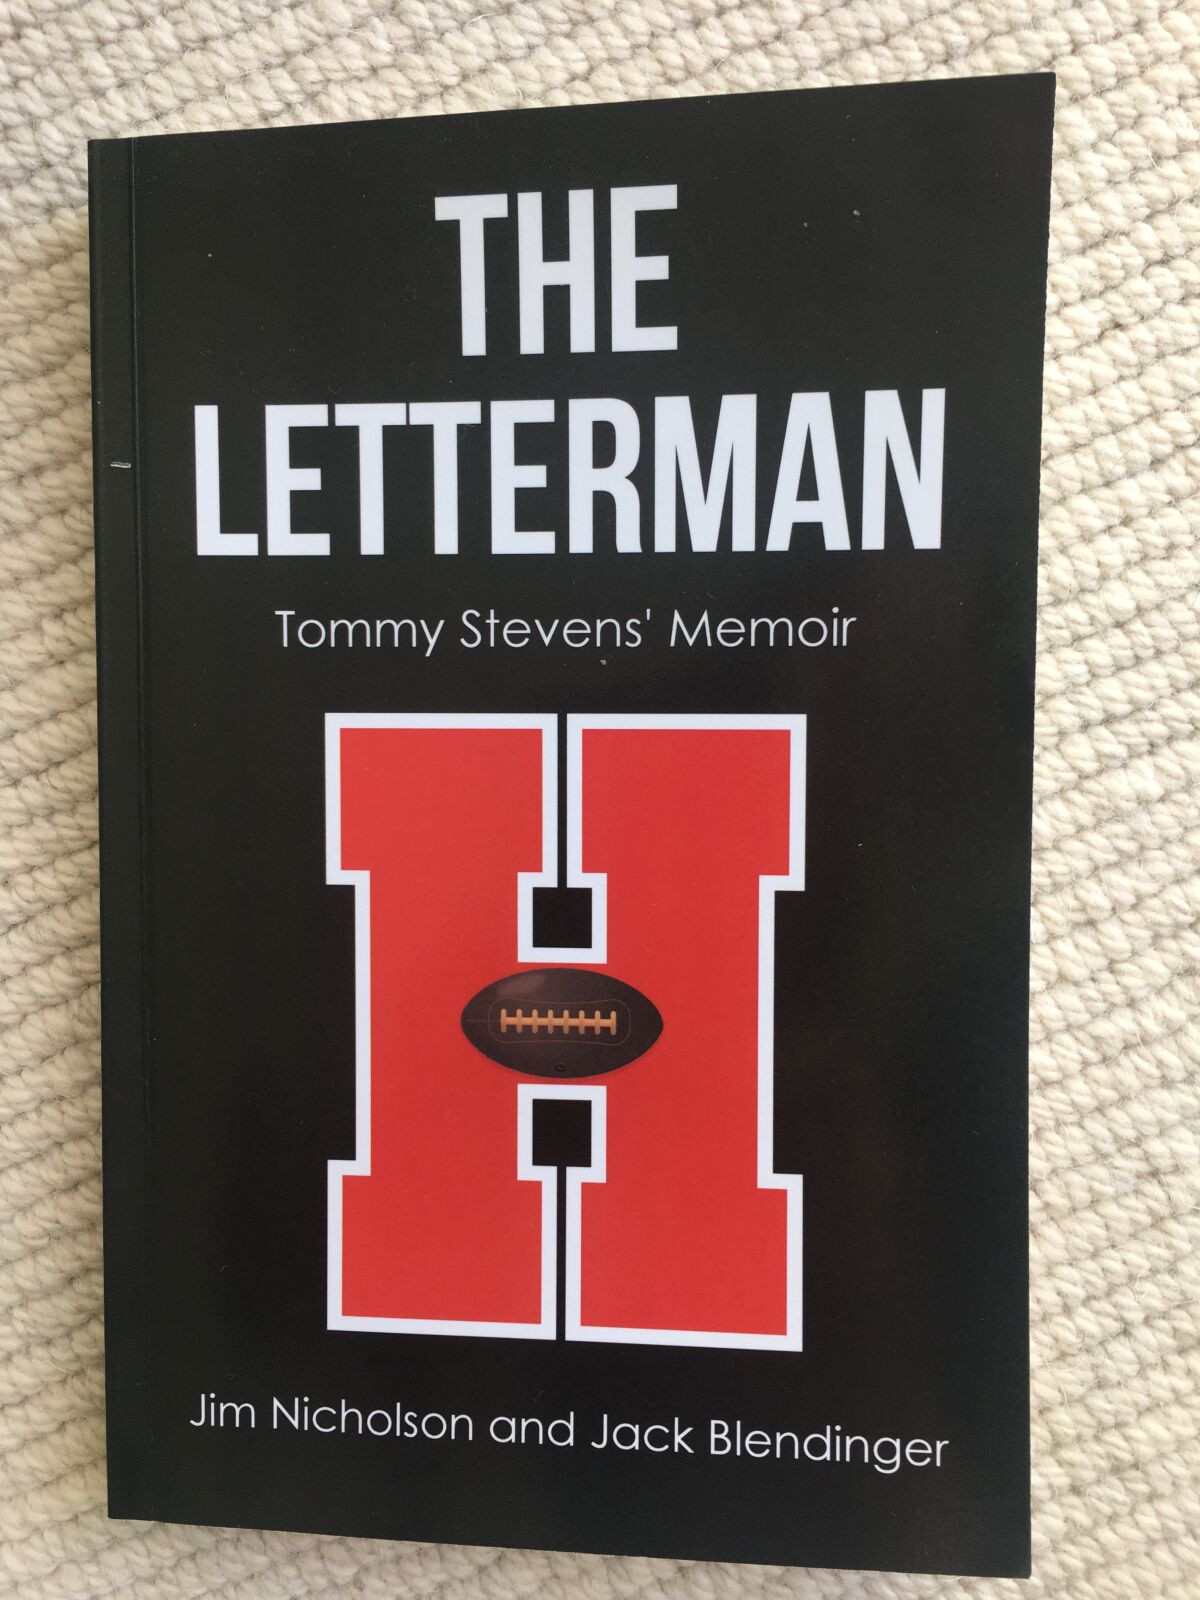 “The Letterman: Tommy Stevens’ Memoir” is co-authored by La Jolla resident Jack Blendinger and Jim Nicholson.